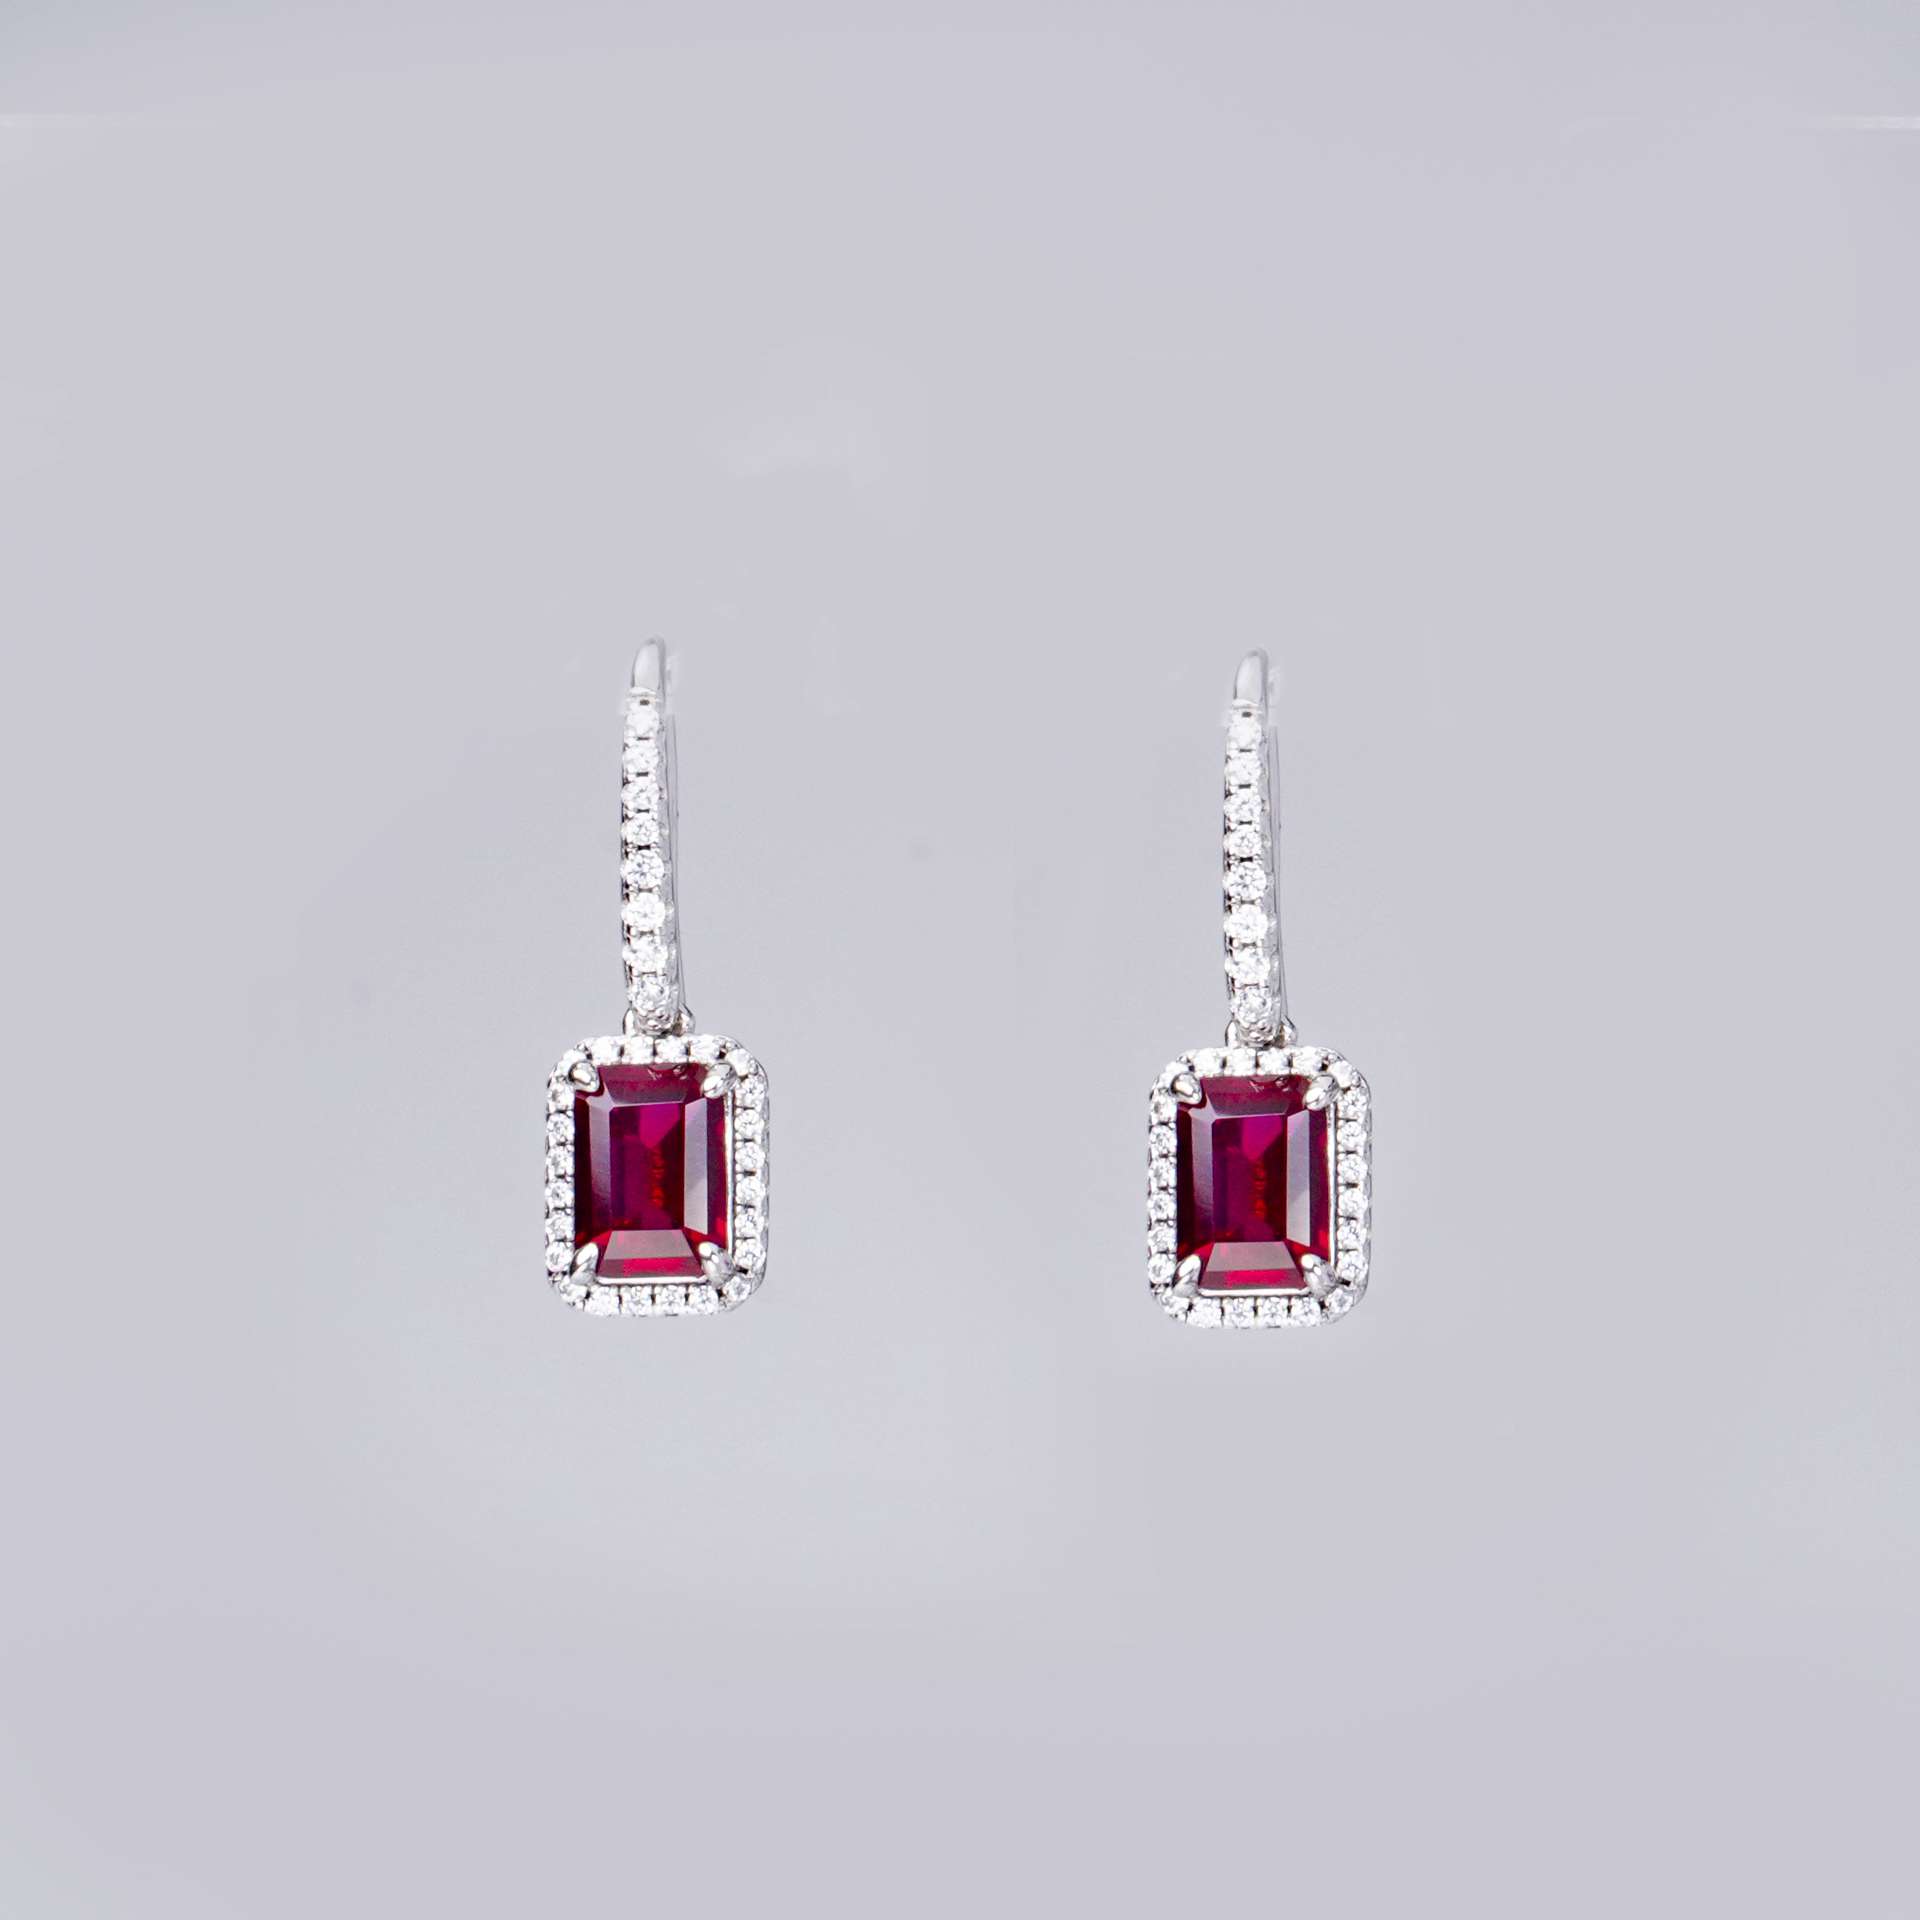 1CT Synthetic Ruby Emerald Cut Earrings